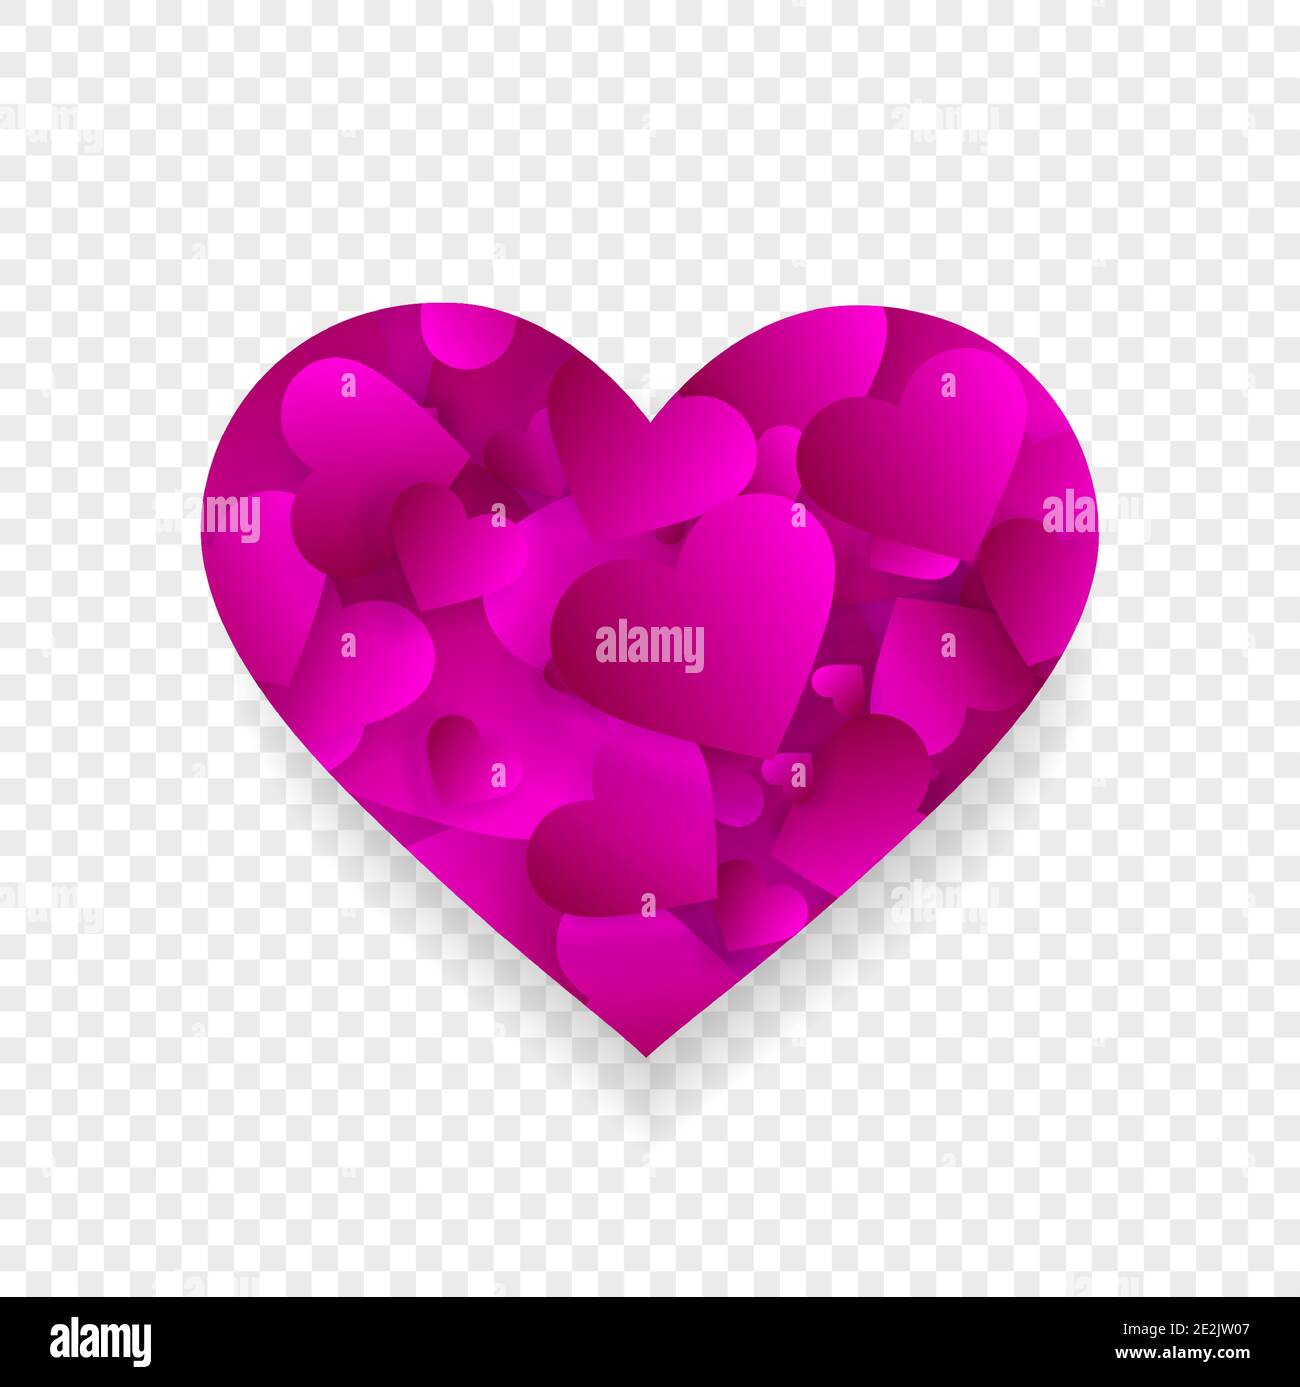 Pink Heart Icon 3d-Effekt mit kleinen Herzen Blütenblätter innerhalb der großen Form isoliert auf transparentem Hintergrund. Liebe, Ehe, Romantik Element für valenti Stock Vektor